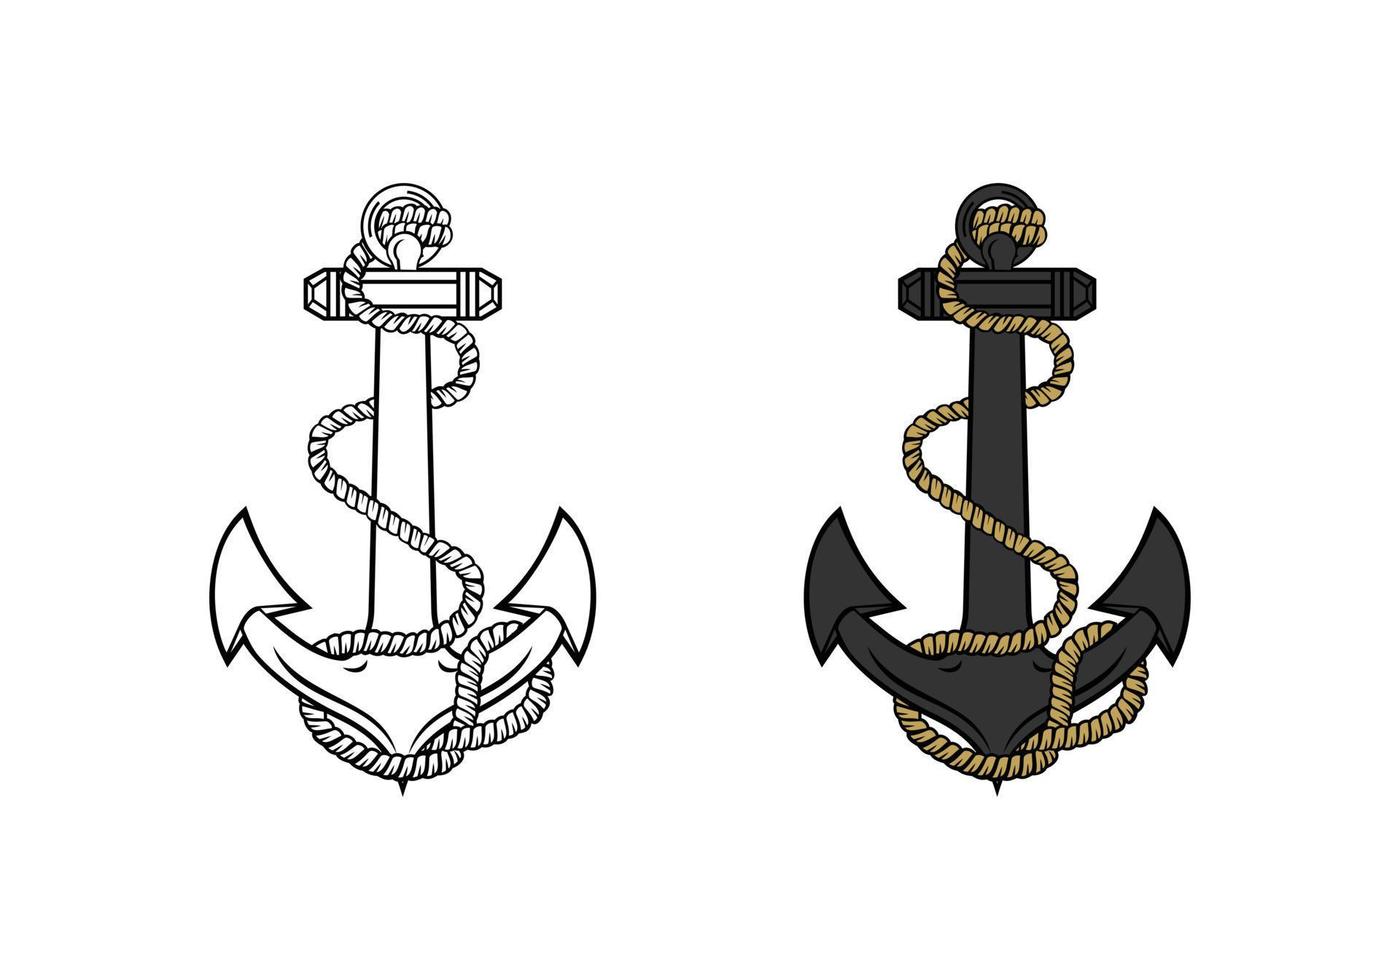 ilustração de design ega de âncora do corpo de fuzileiros navais do estado unido vetor